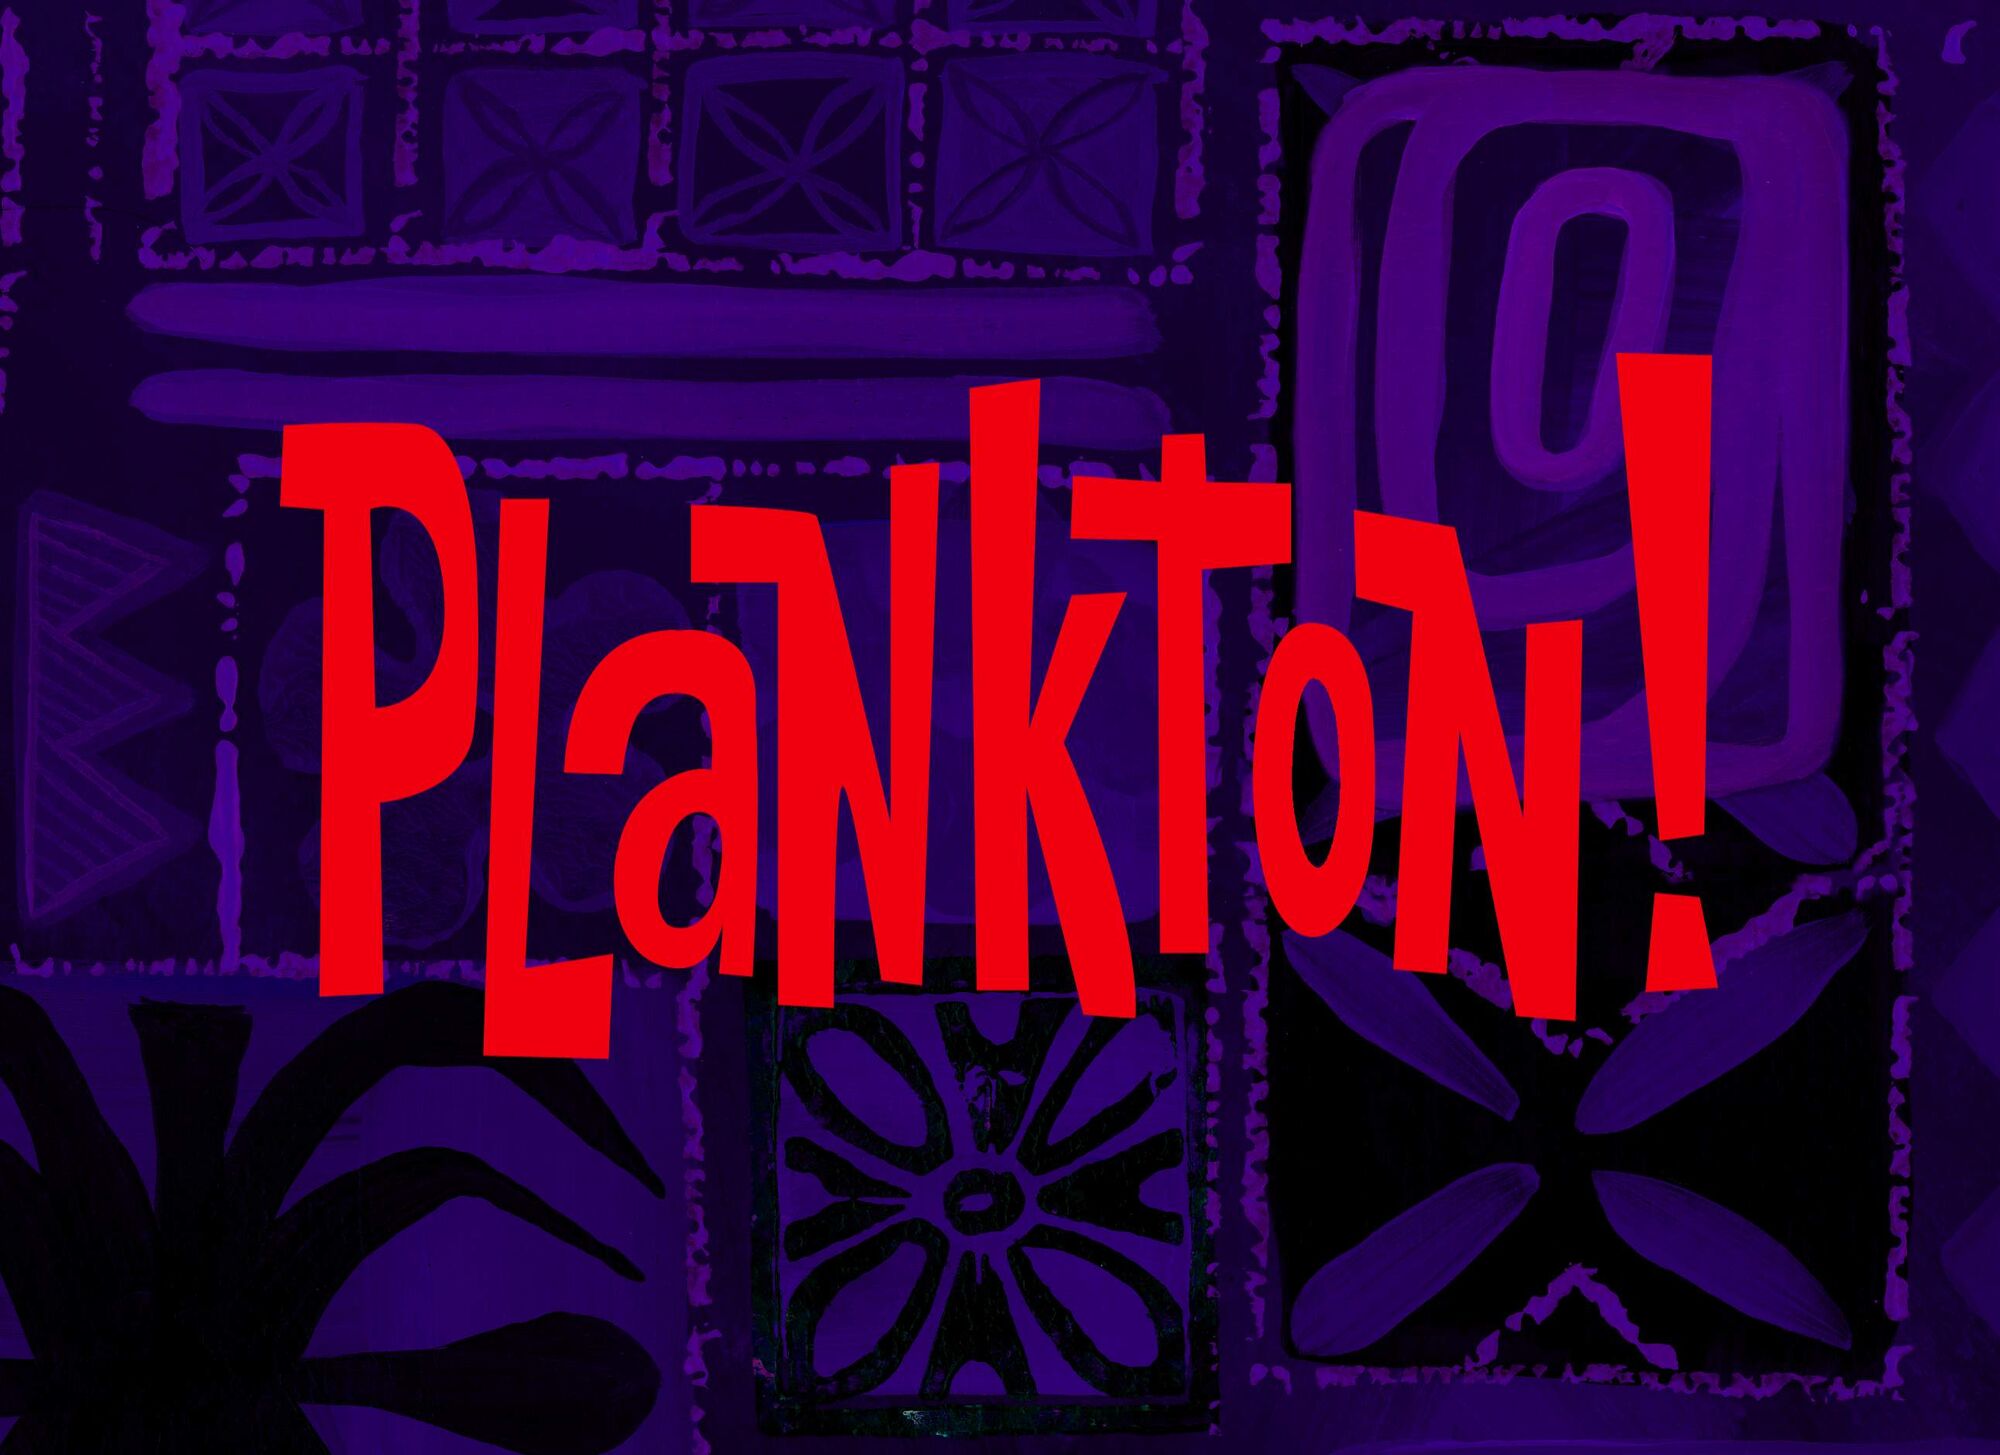  Plankton  SpongeBob Wiki  Fandom